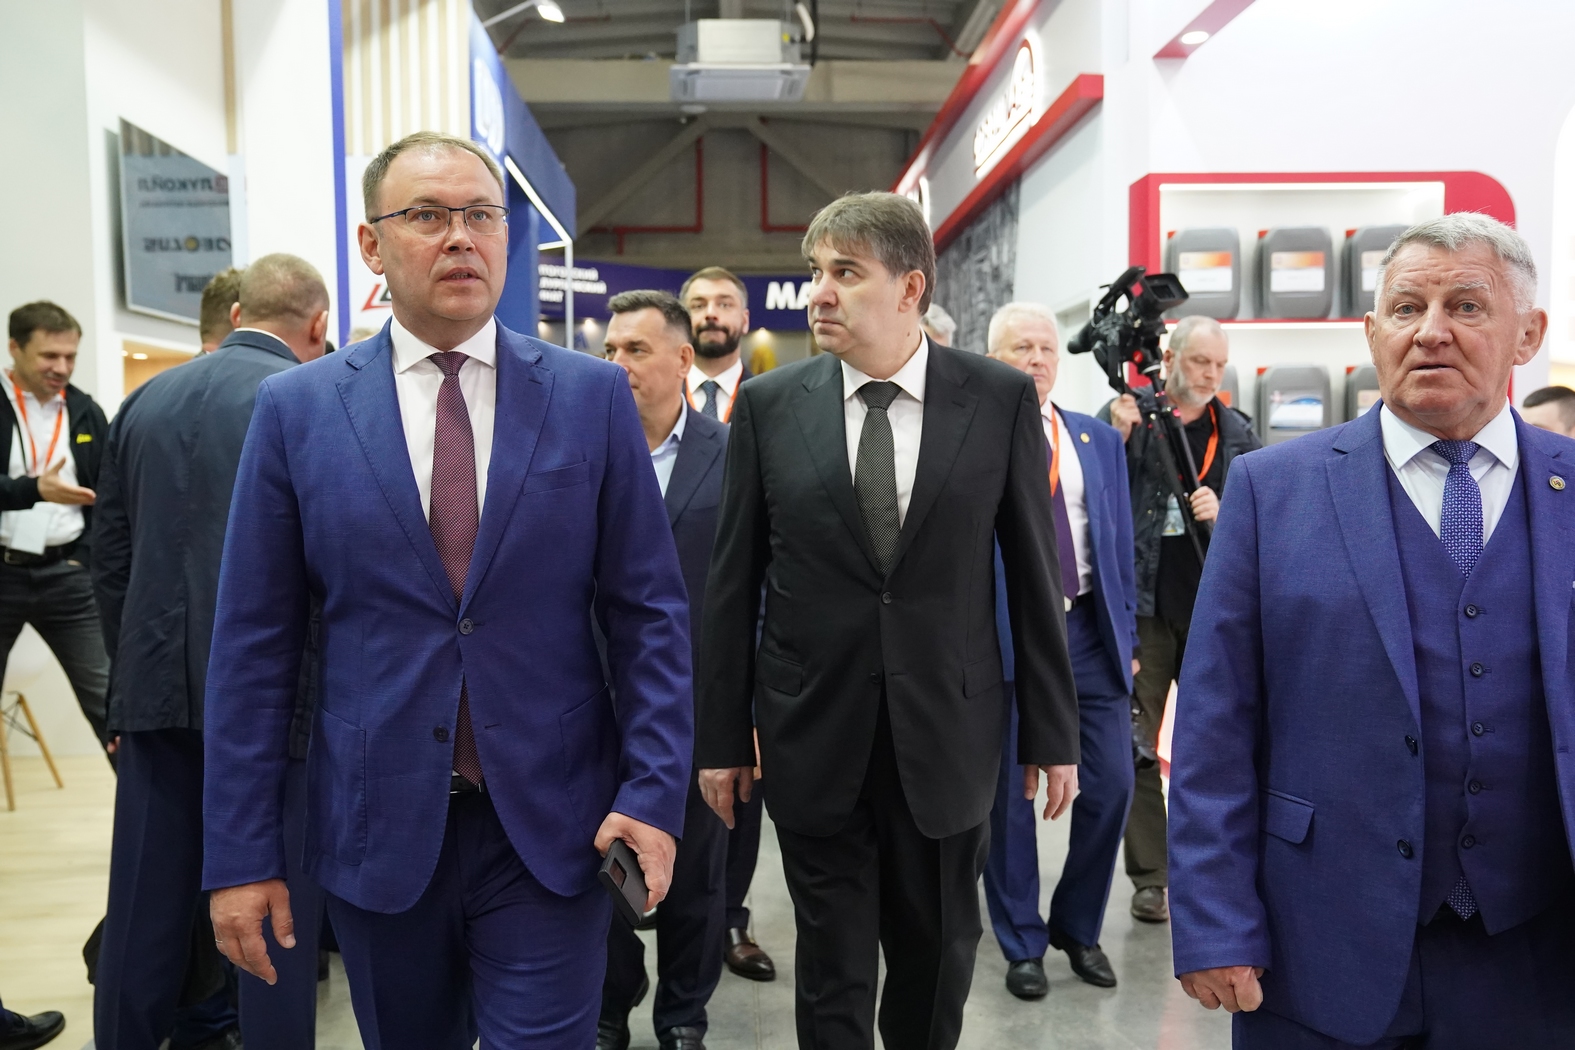 Врио губернатора Кузбасса Илья Середюк рассказал об открытии выставки "Уголь России и Майнинг"